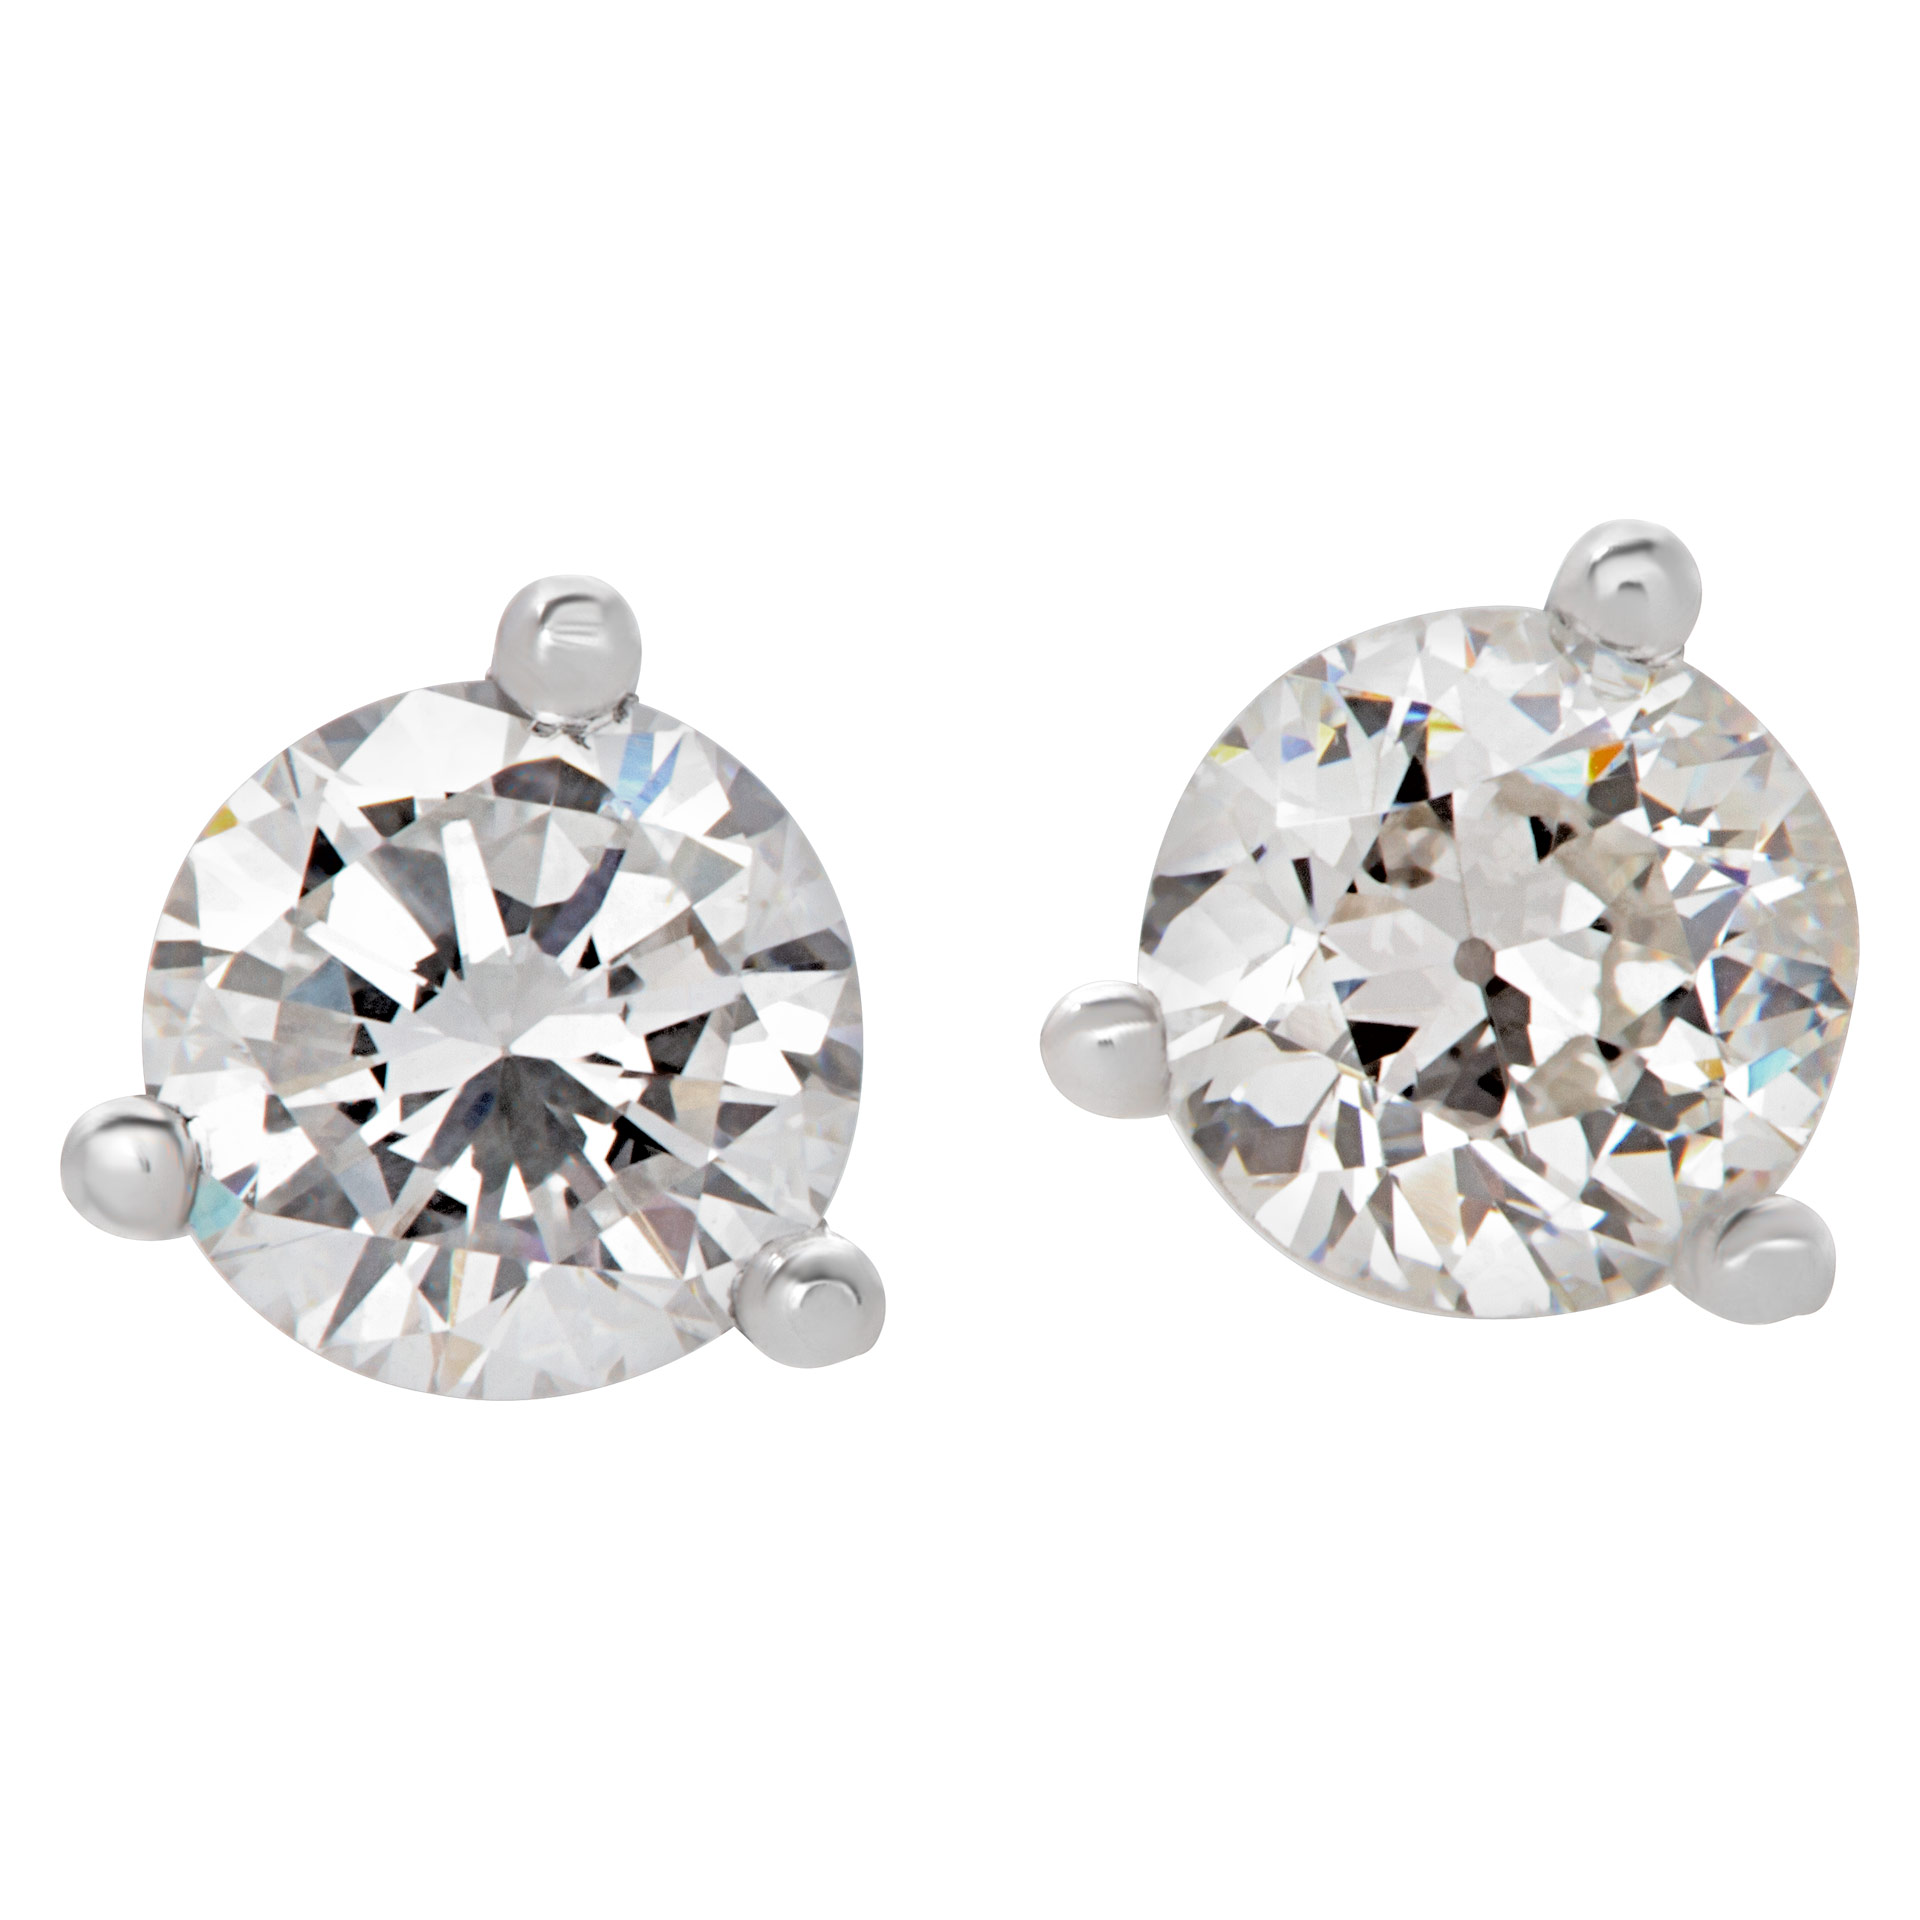 GIA certified diamond studs 0.28 carat (E color, VS2 clarity) and 0.26 carat (G color, VS2 clarity) image 1